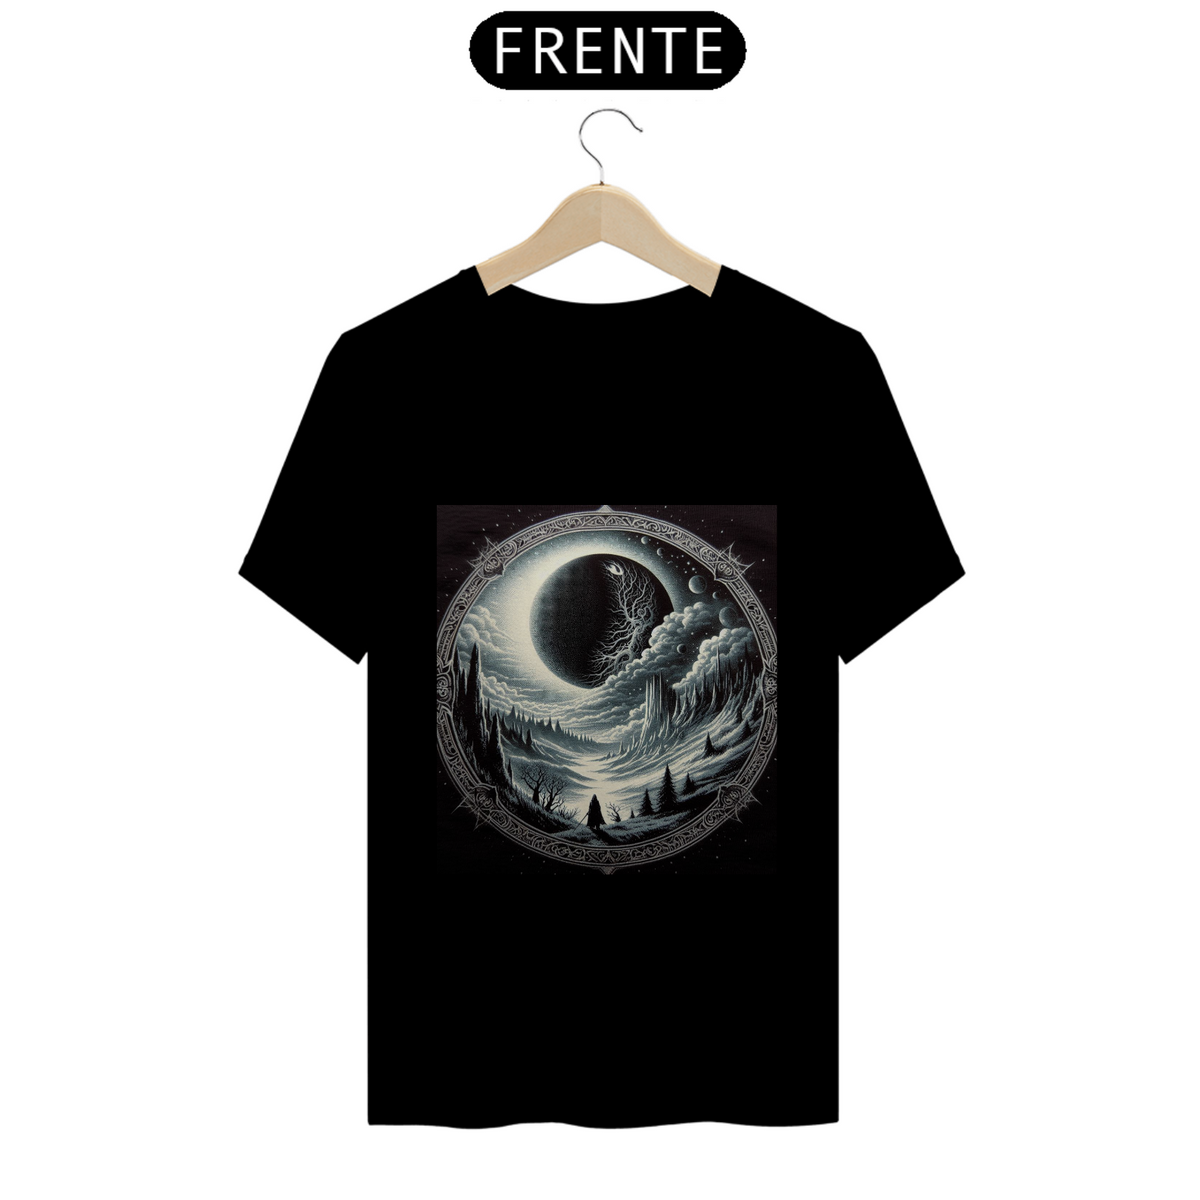 Nome do produto: T-Shirt Eclipse na Floresta